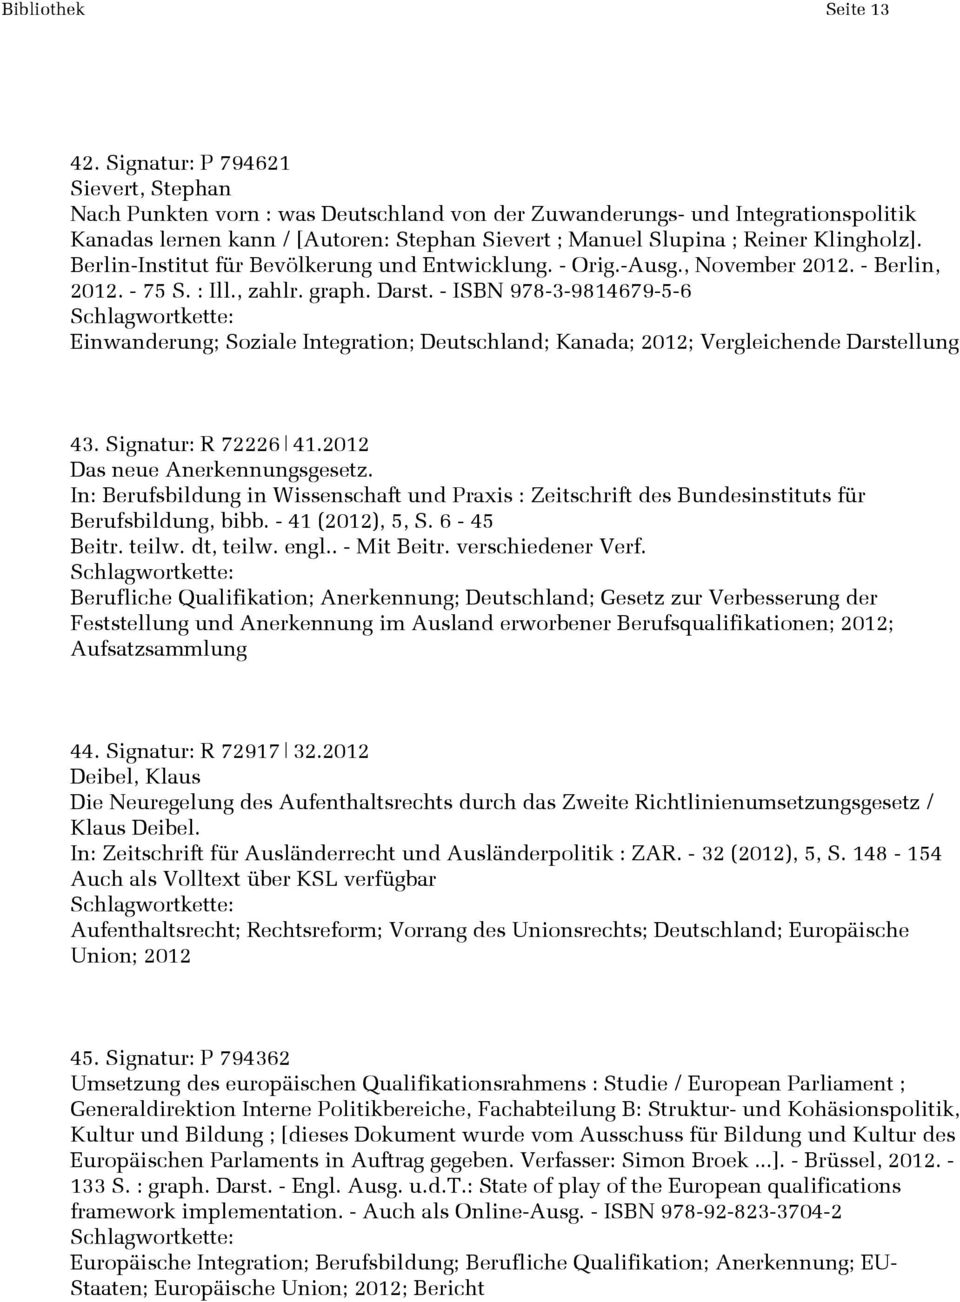 Klingholz]. Berlin-Institut für Bevölkerung und Entwicklung. - Orig.-Ausg., November 2012. - Berlin, 2012. - 75 S. : Ill., zahlr. graph. Darst.